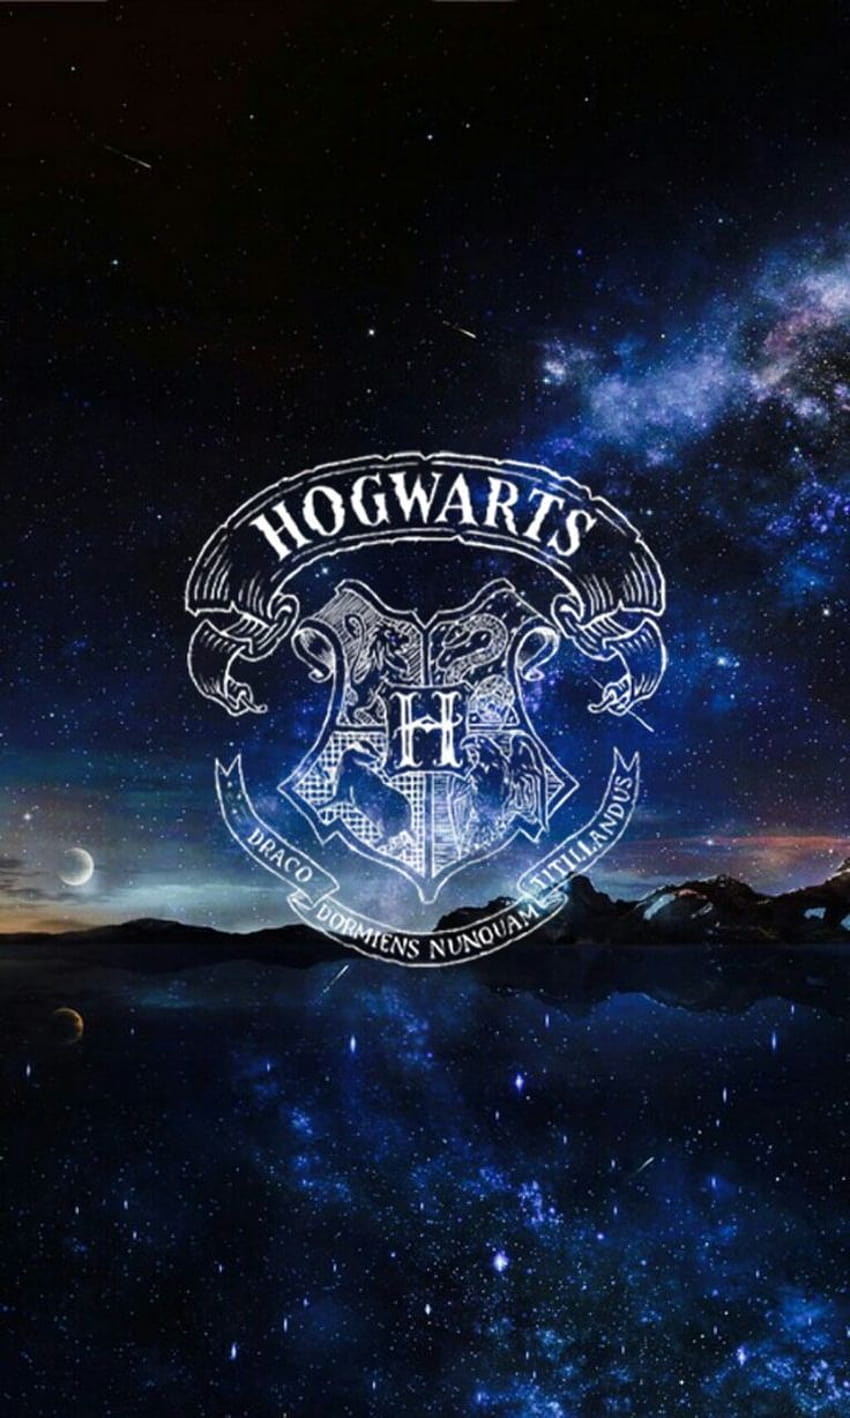 750+ Hogwarts Pictures | Download Free Images on Unsplash